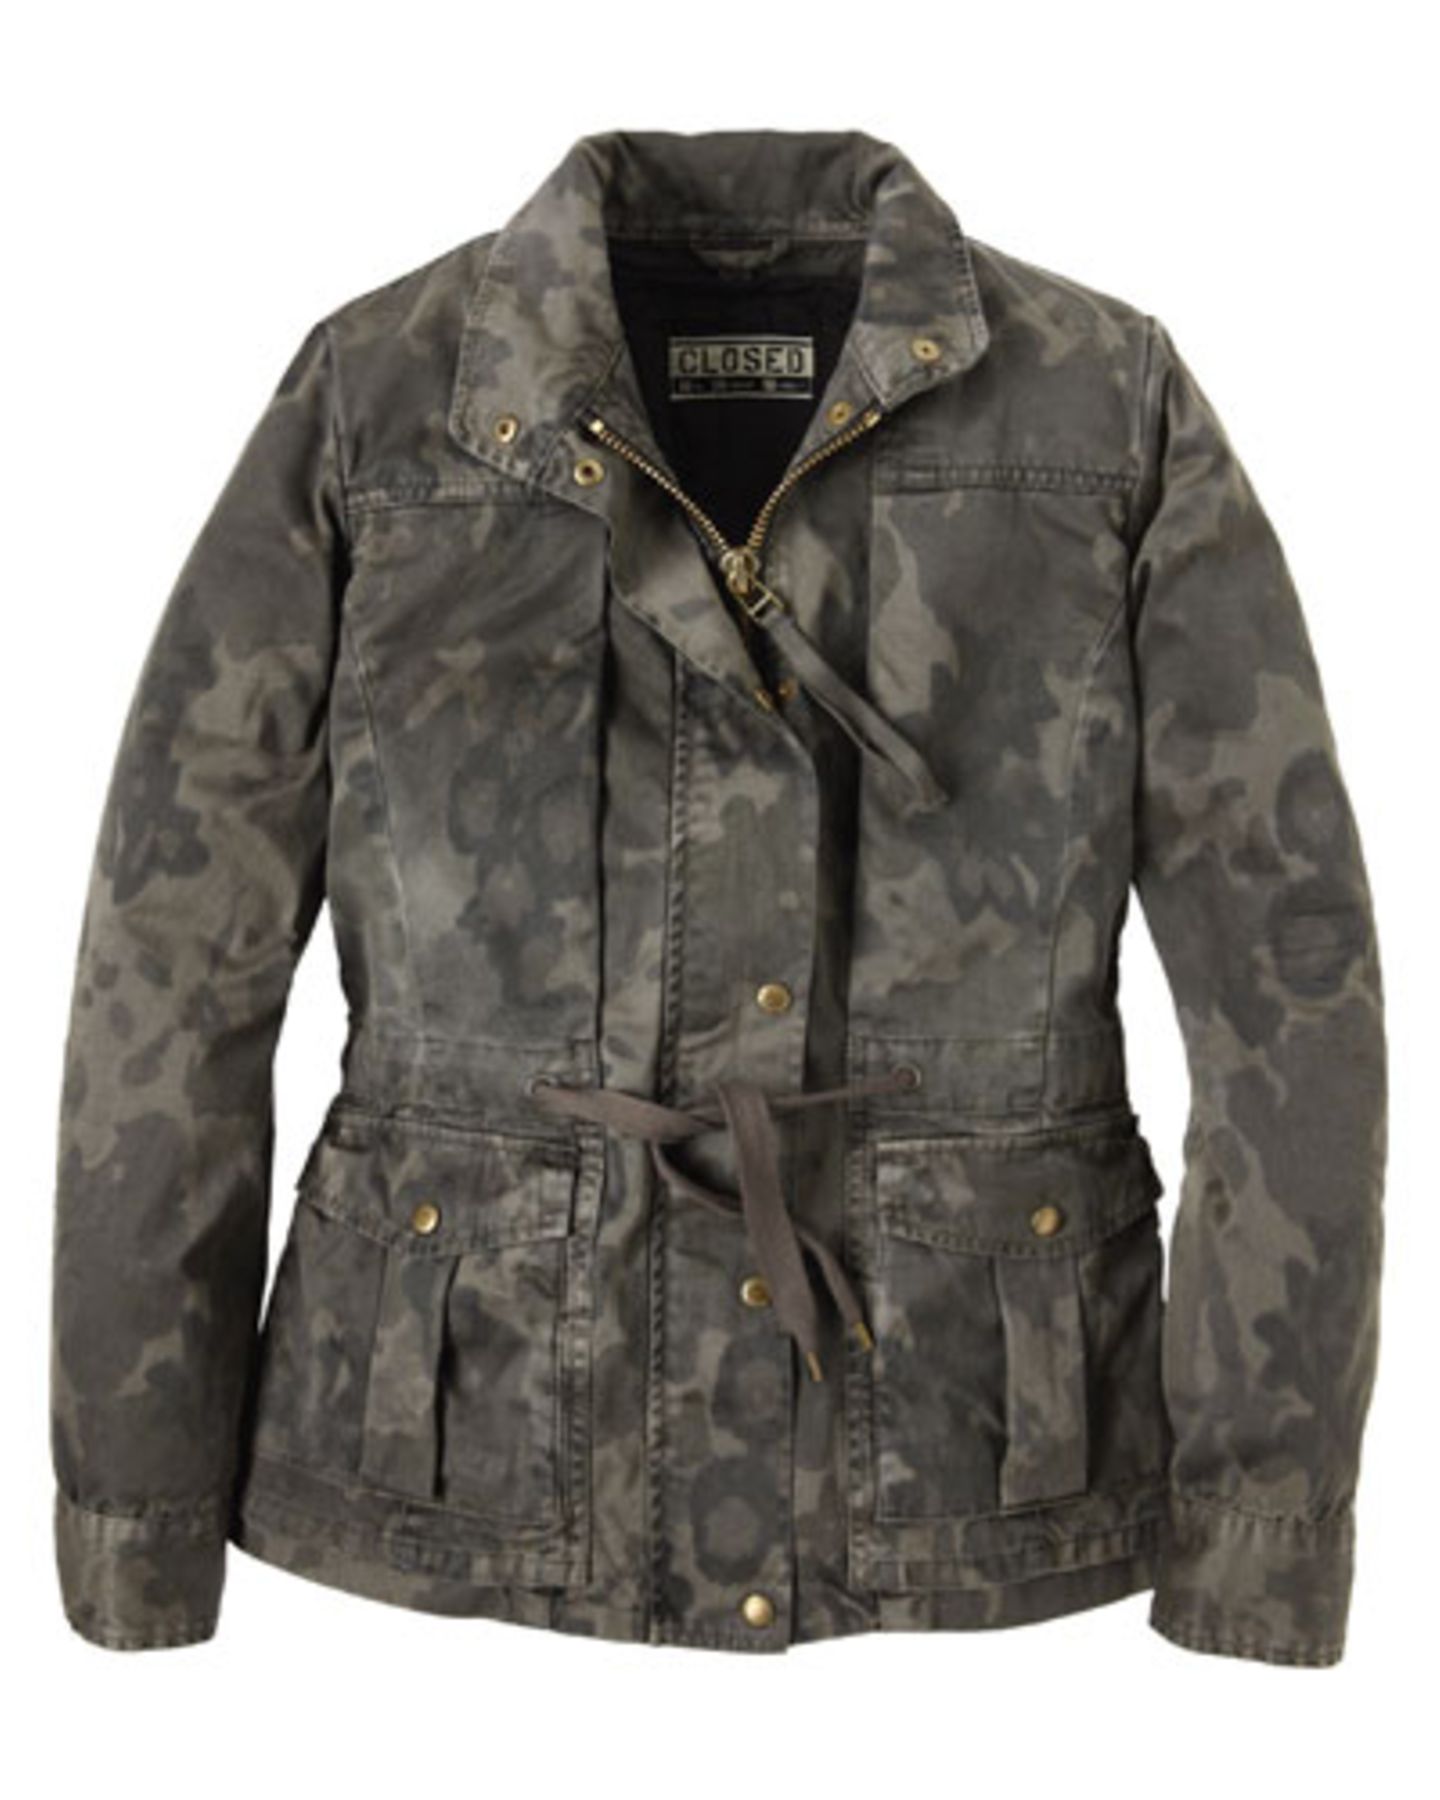 Jacke mit Camouflage-Muster und Bindegürtel in der Taille von CLOSED über Yalook, um 400 Euro.